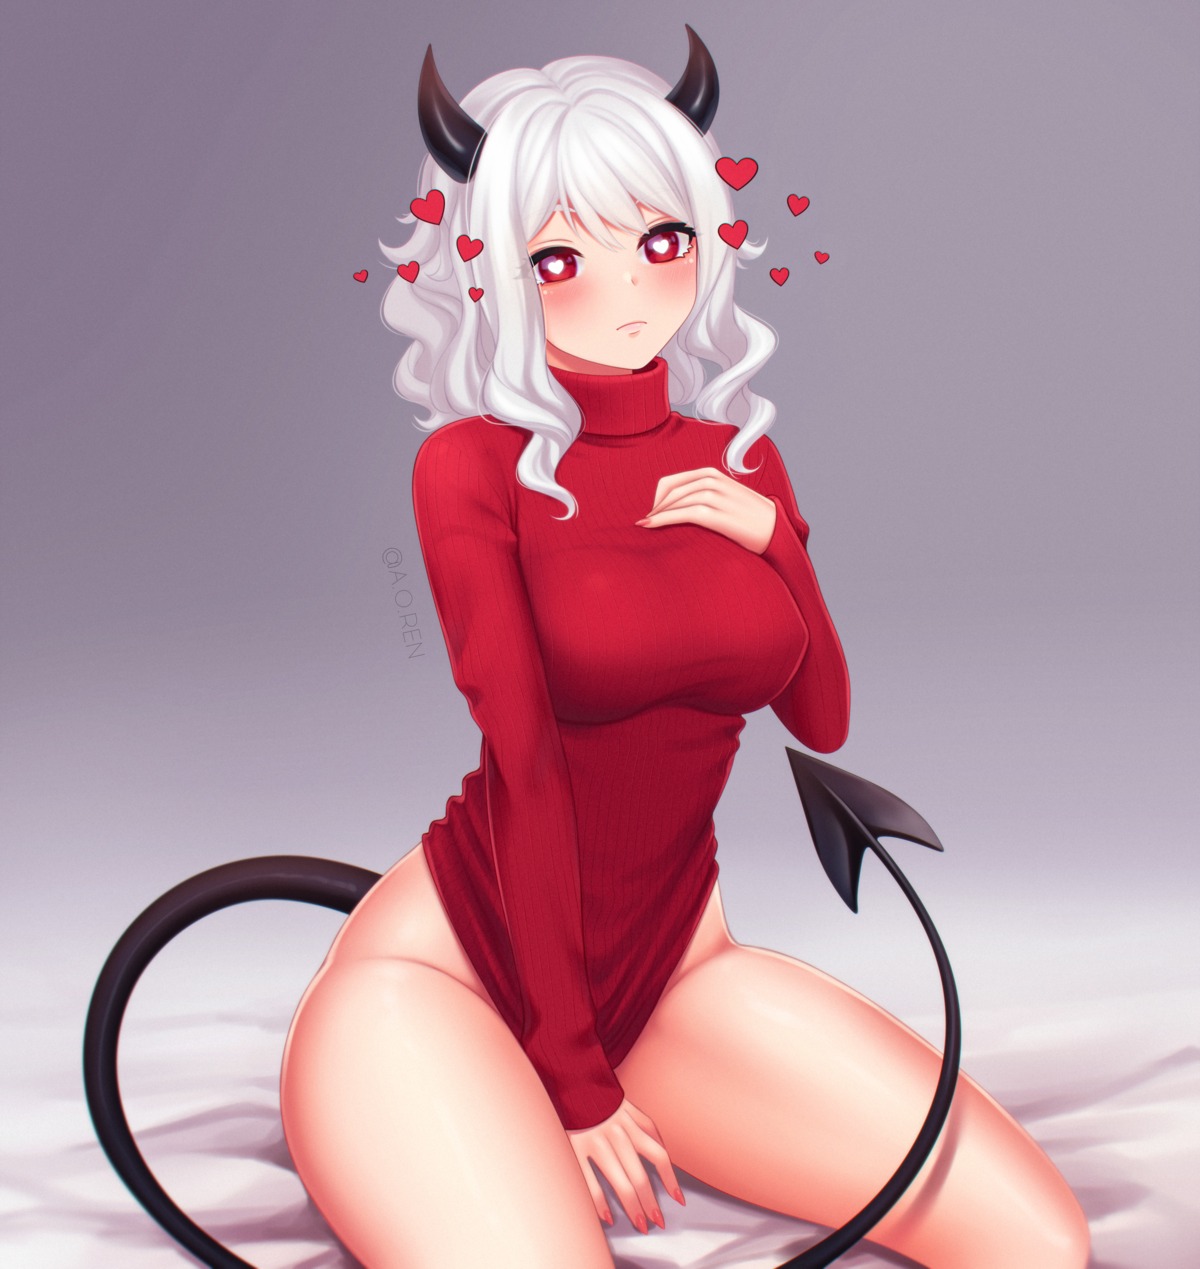 anna_o_renko bottomless helltaker horns modeus_(helltaker) sweater tail